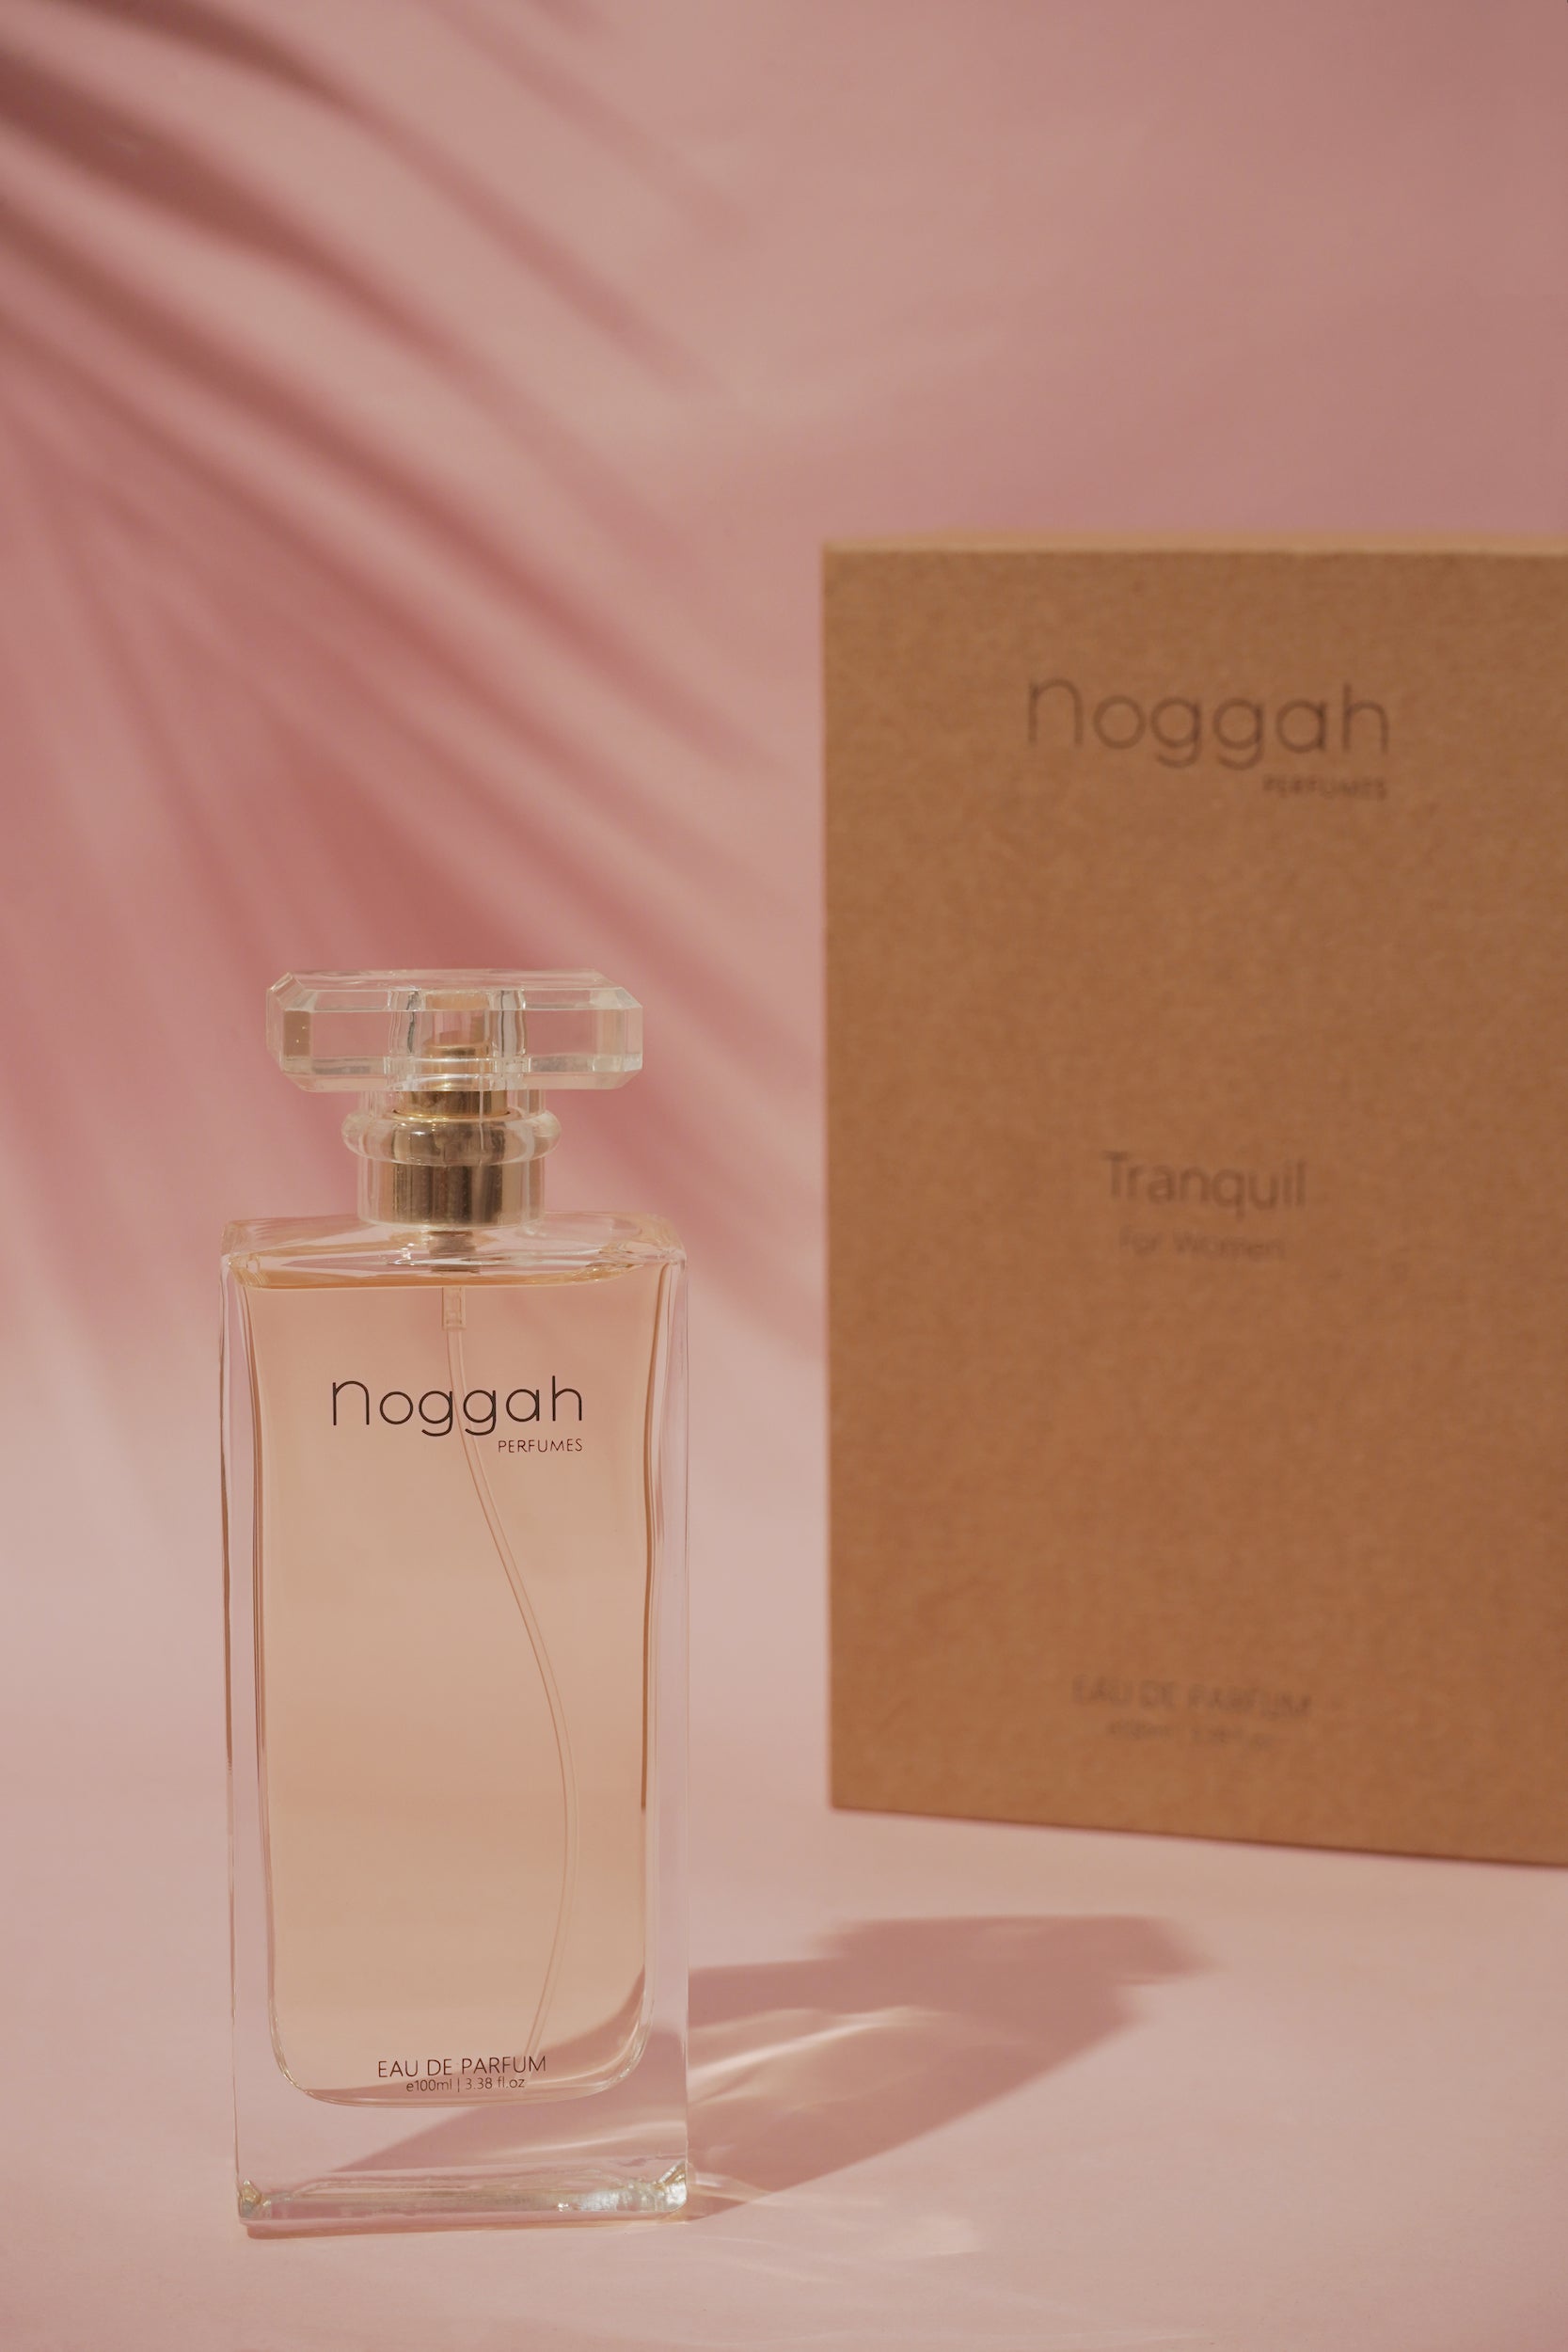 Tranquil for Women  Eau De Parfum e100ml – Noggah Perfumes